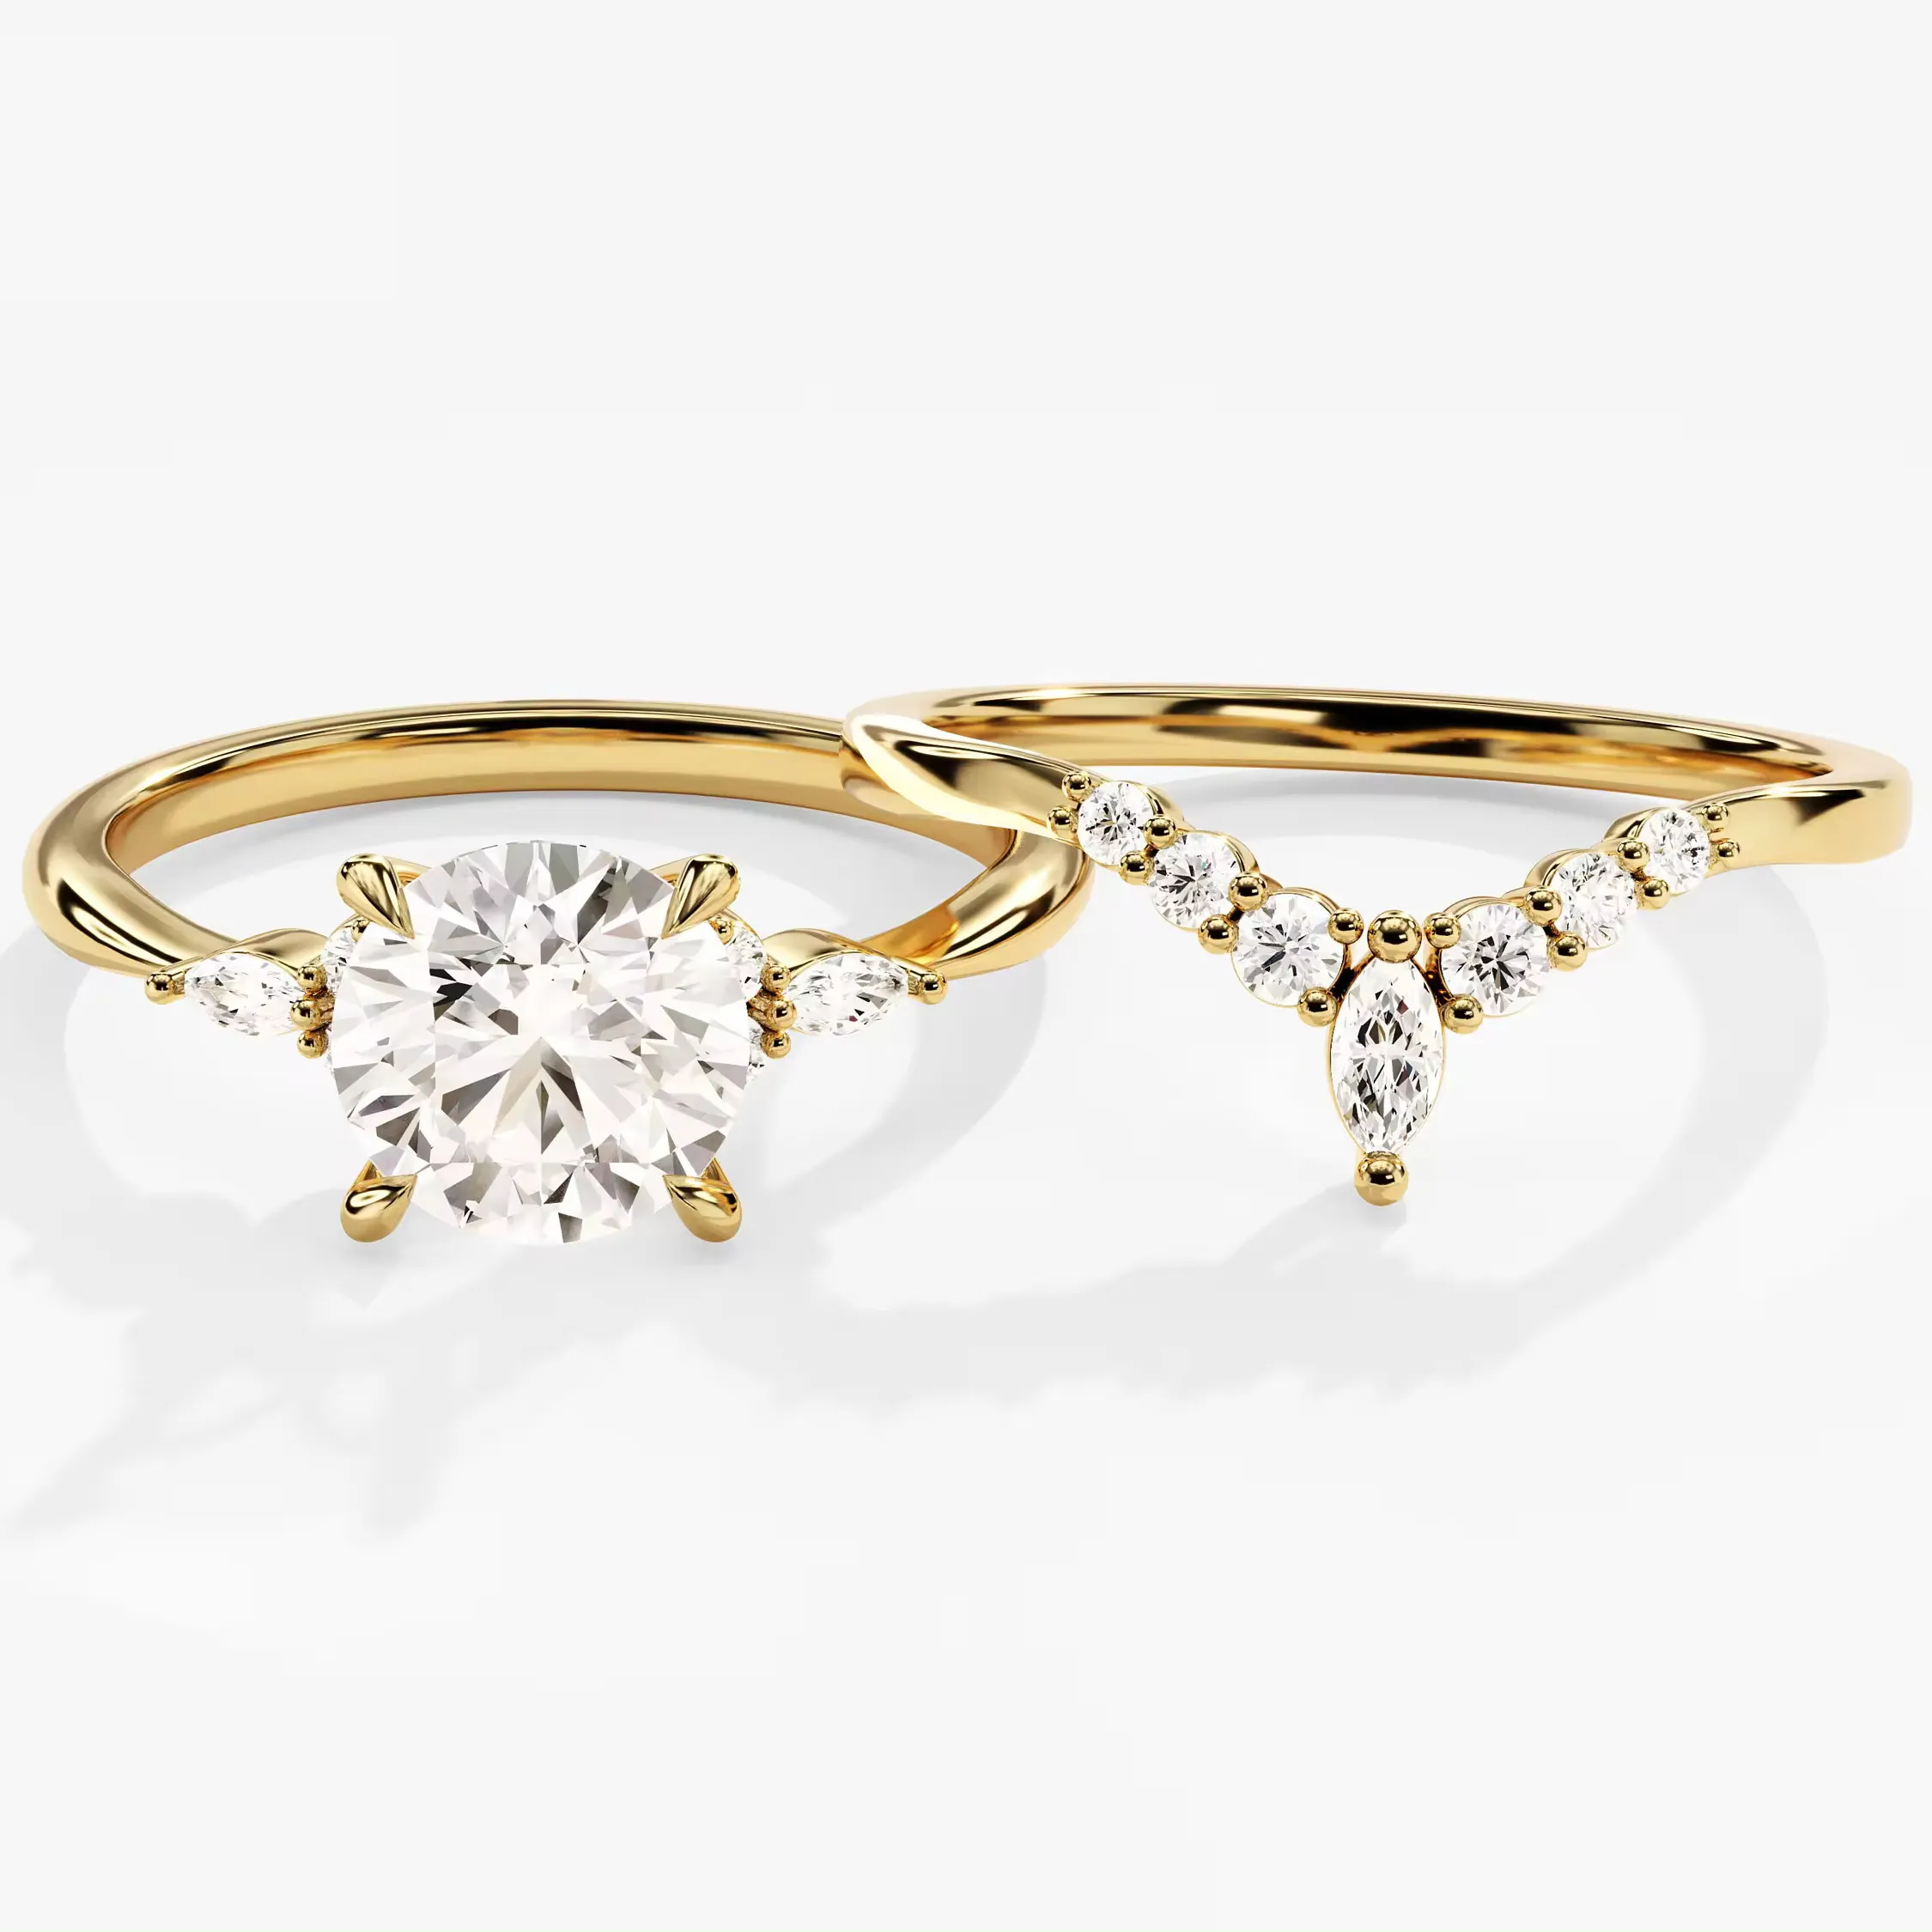 Vintage-Diamant-Erzeugsring-Set 14k Gold gebogene Akzente Diamant Verlobungsring runder Cluster Ehering